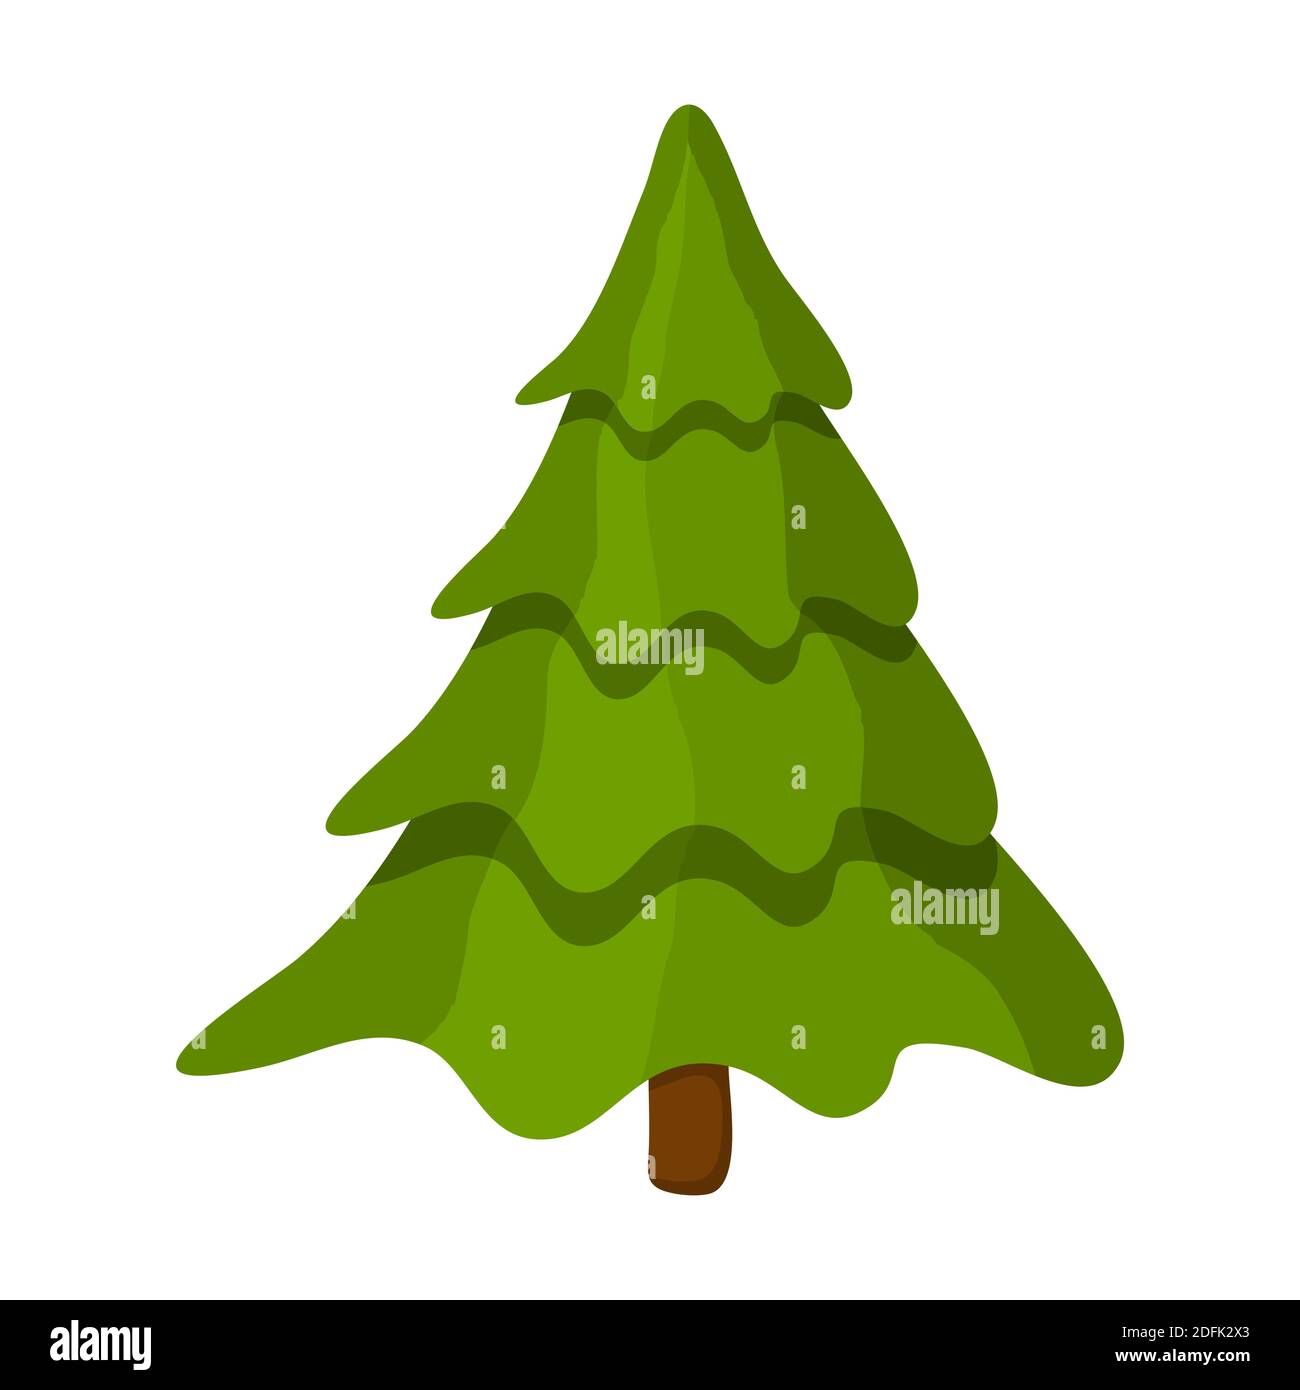 Kiefernbaum Cartoon Illustration isoliert auf weiß. Vektor Tannenbaum Design für weihnachten. Leerer weihnachtsbaum. Vorlage für Weihnachtssymbole. Traditioneller Wein Stock Vektor